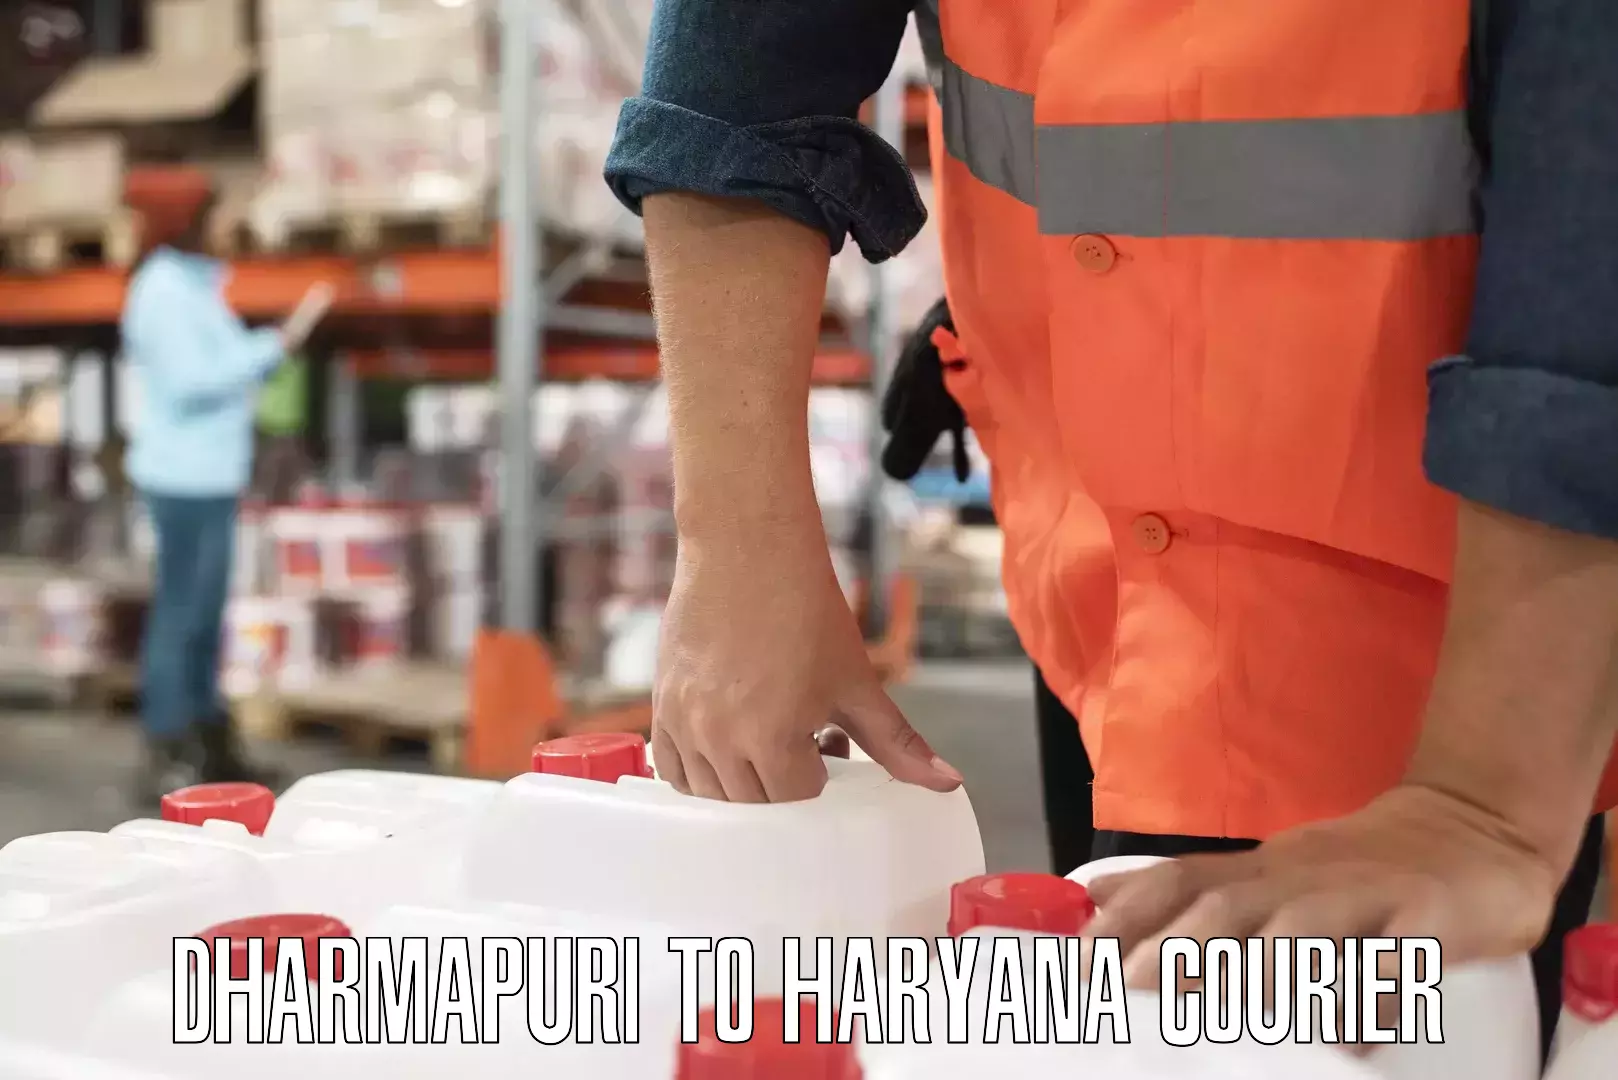 Comprehensive shipping network Dharmapuri to NCR Haryana